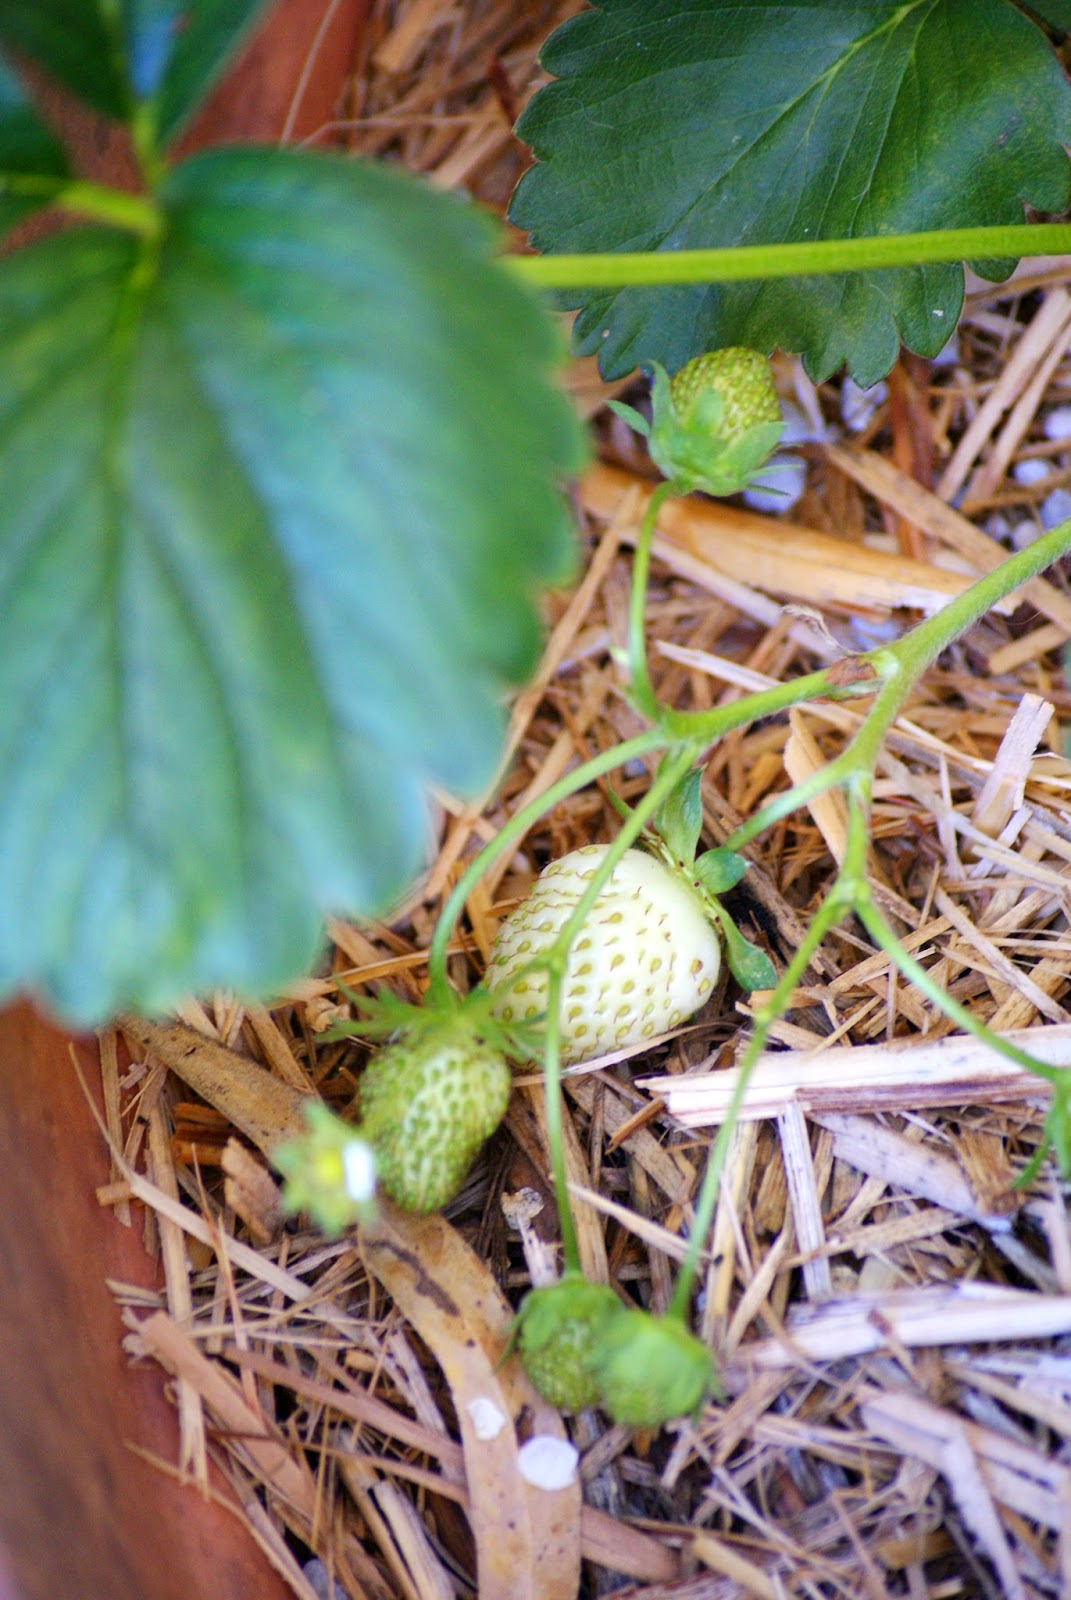 Strawberries Growing in the Garden